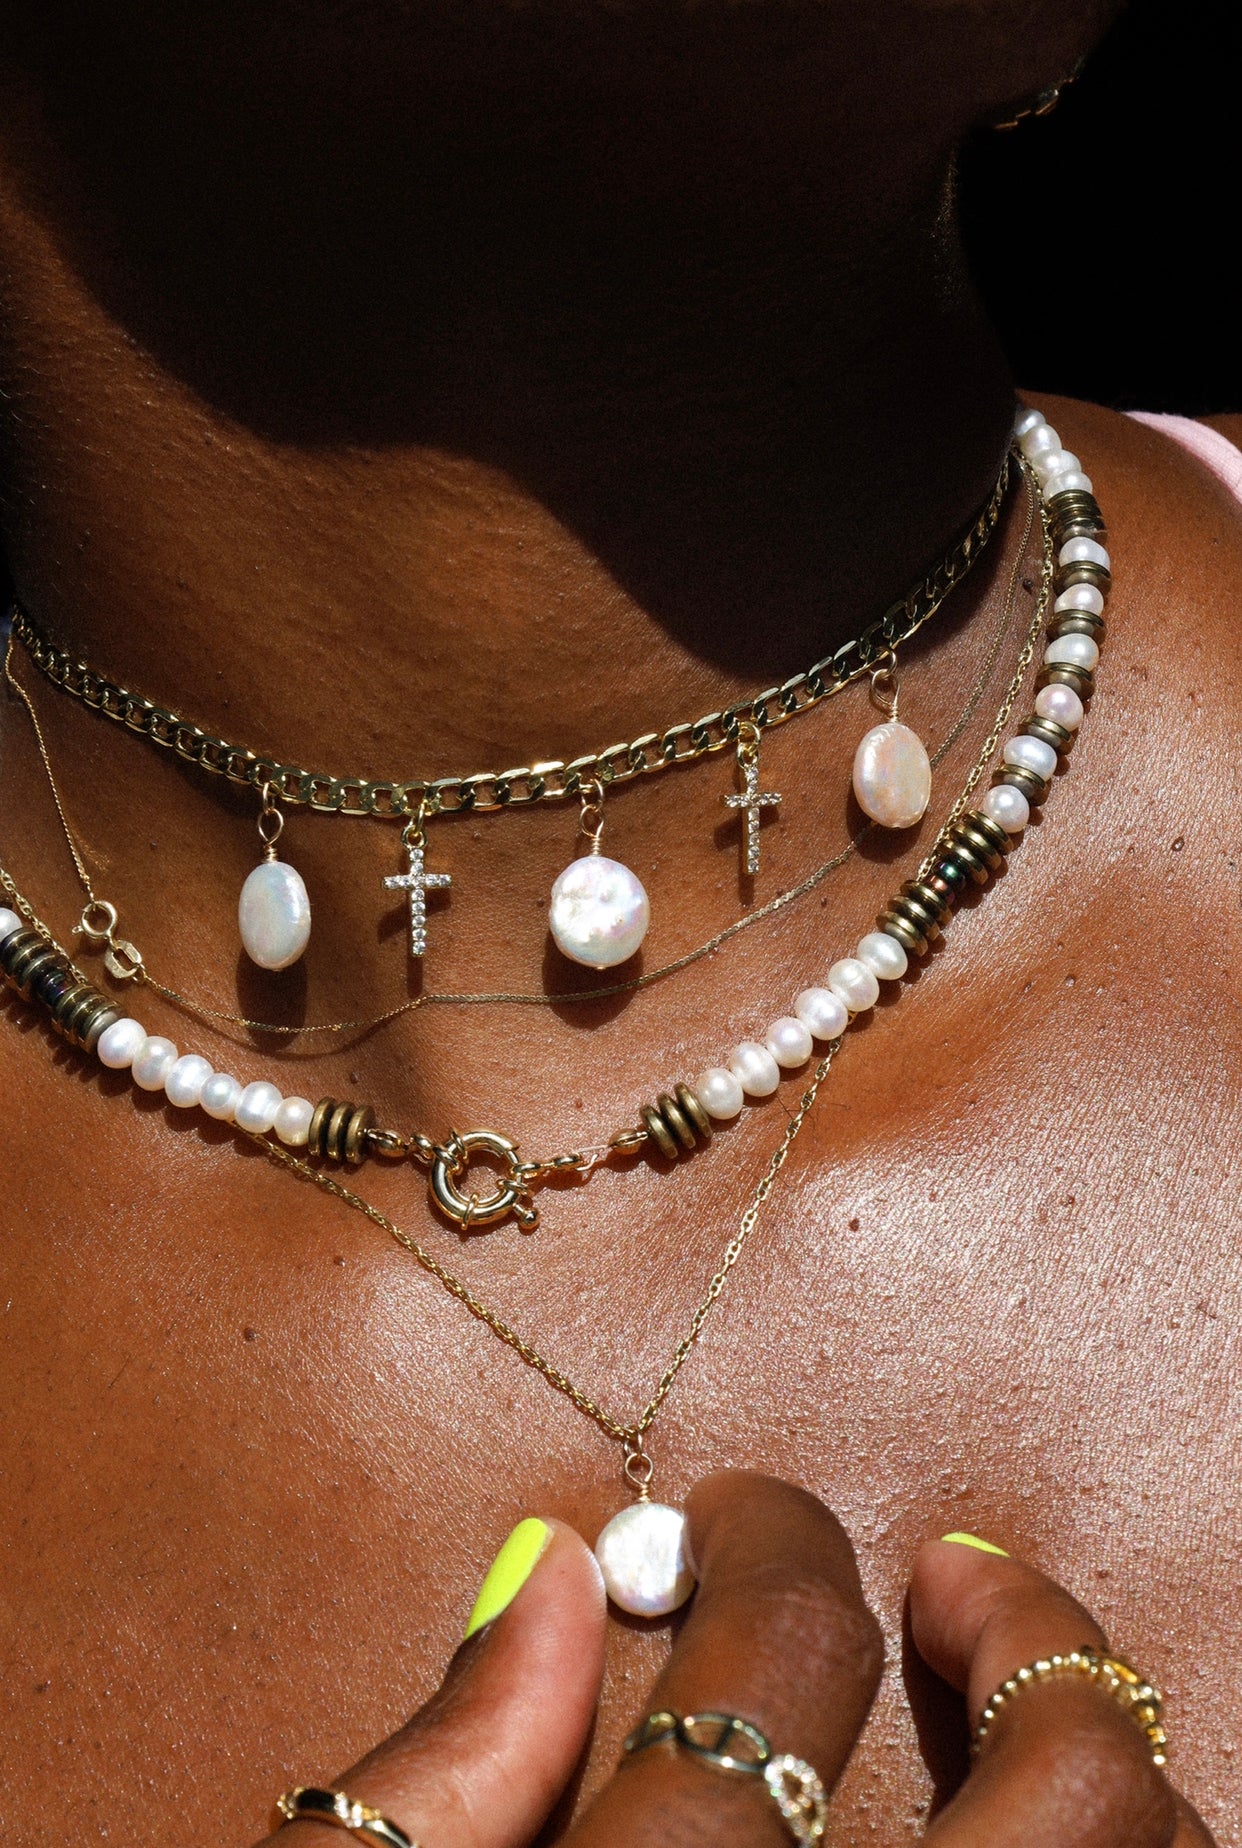 Divine “Oshua” necklace